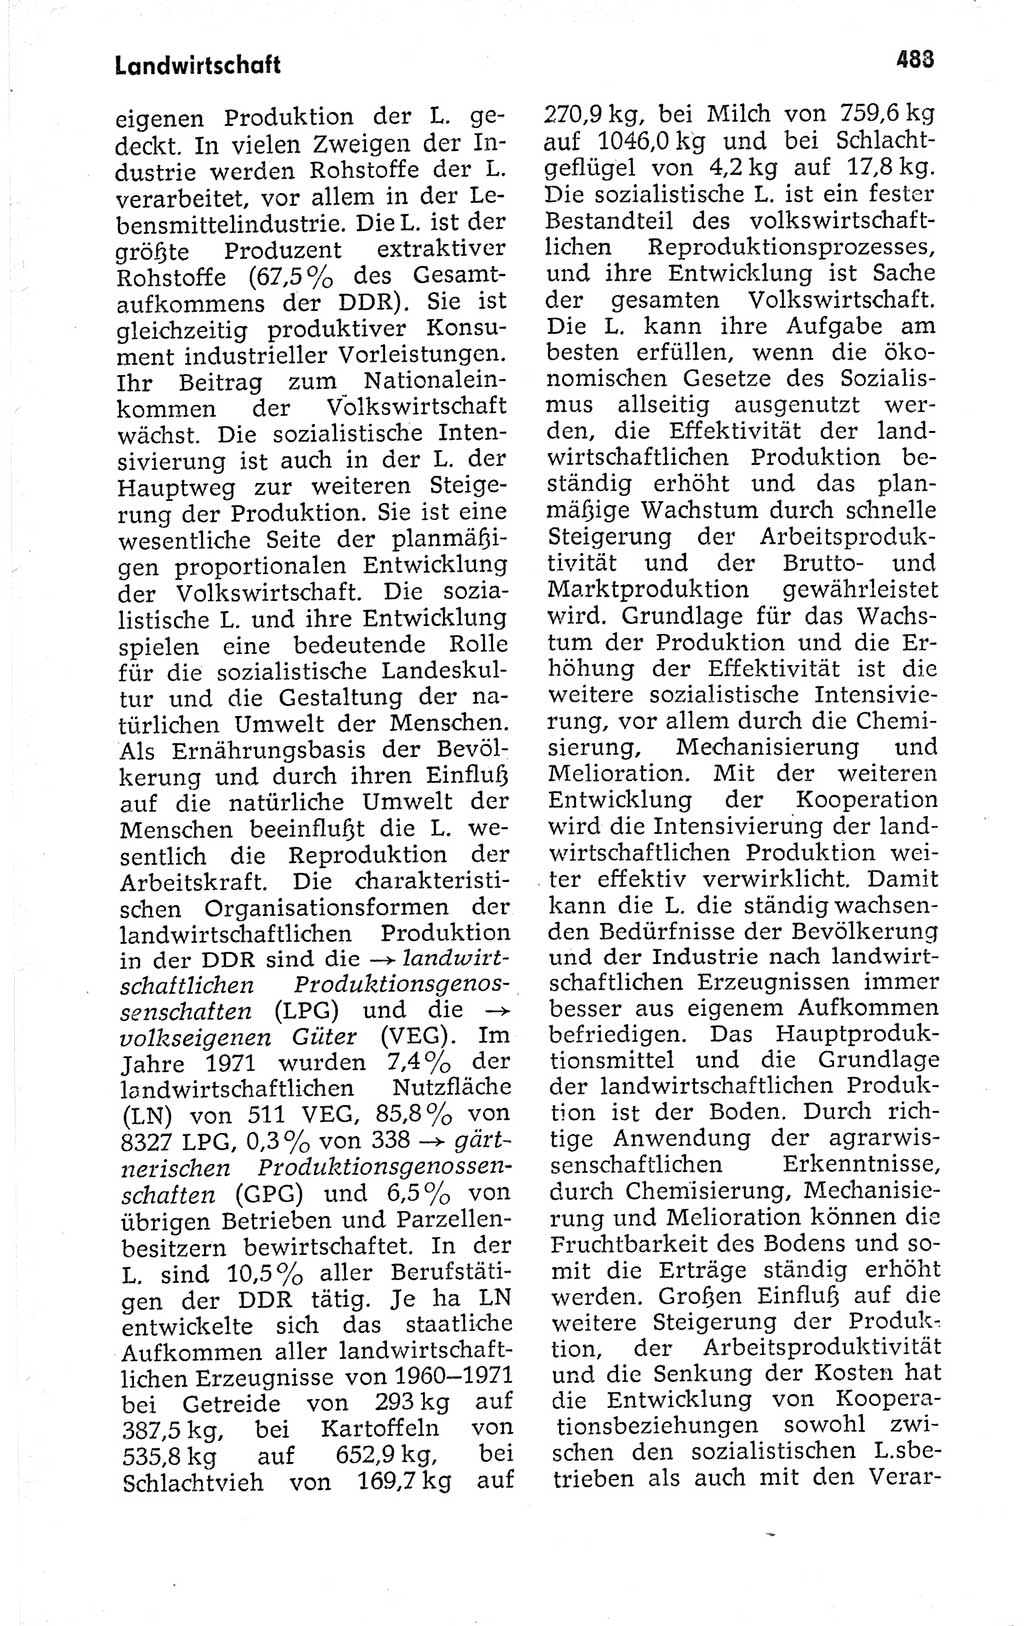 Kleines politisches Wörterbuch [Deutsche Demokratische Republik (DDR)] 1973, Seite 488 (Kl. pol. Wb. DDR 1973, S. 488)